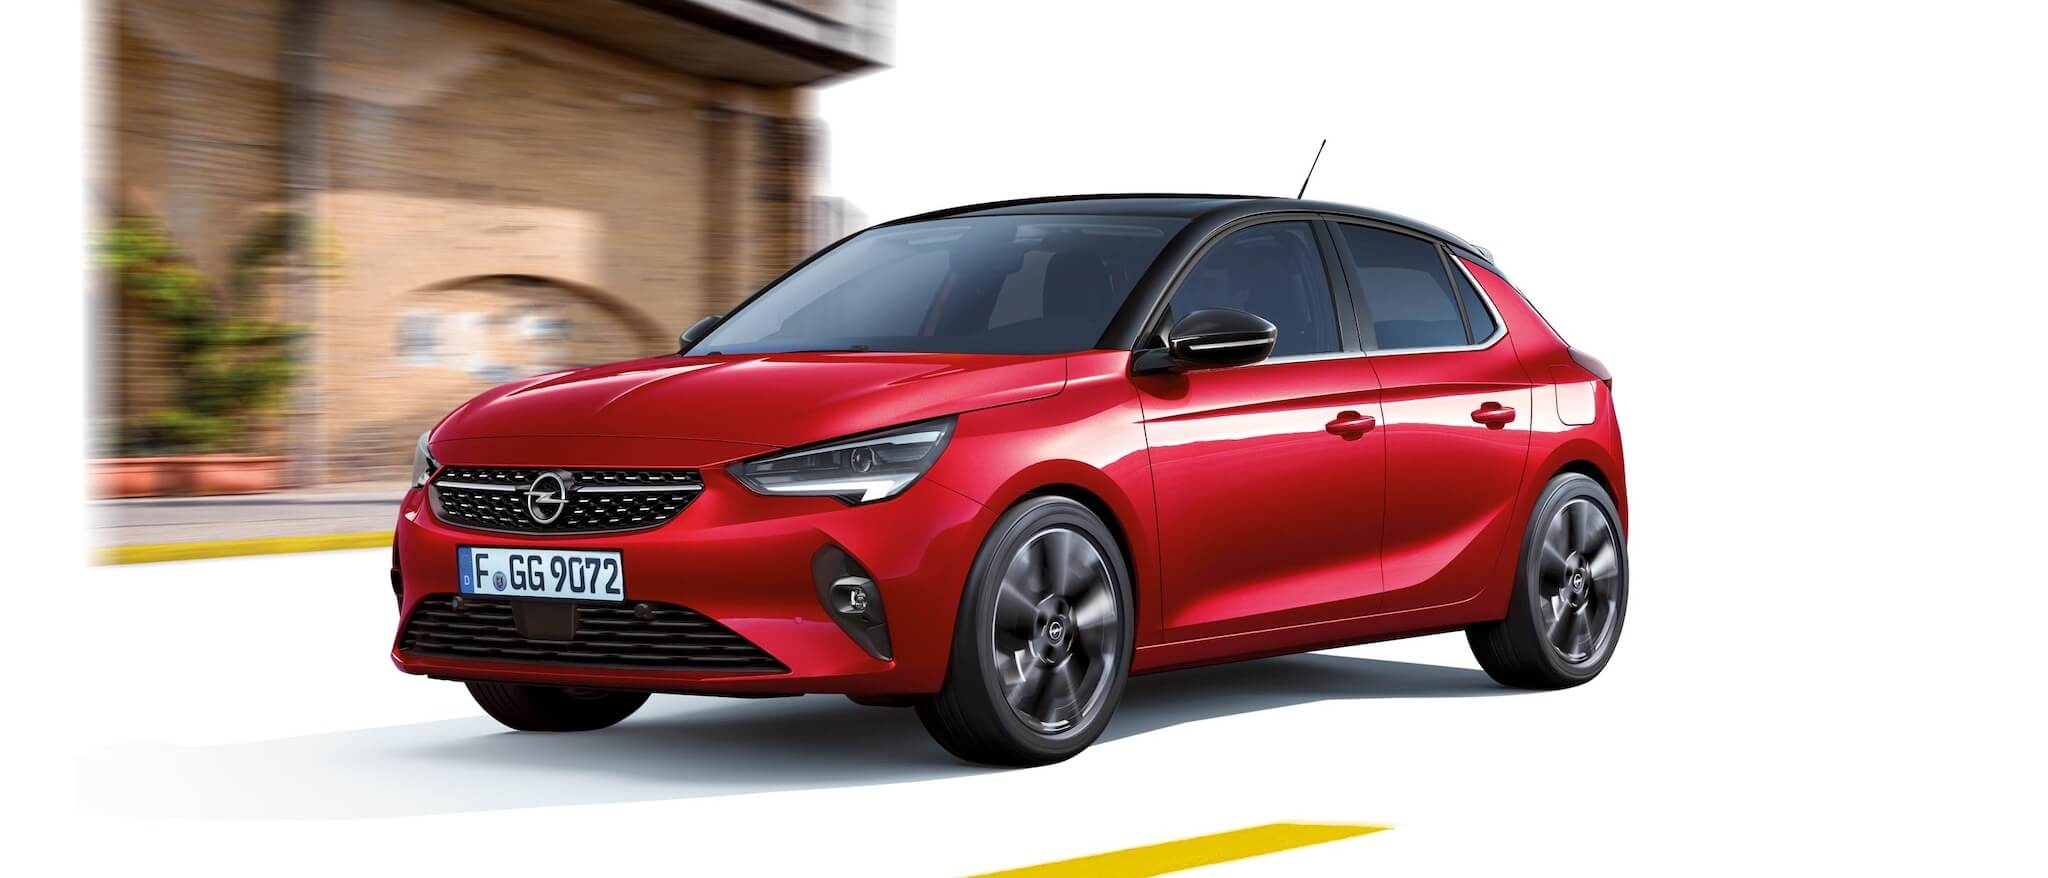 Opel Corsa incelemesi, kırmızı opel corsa 2021